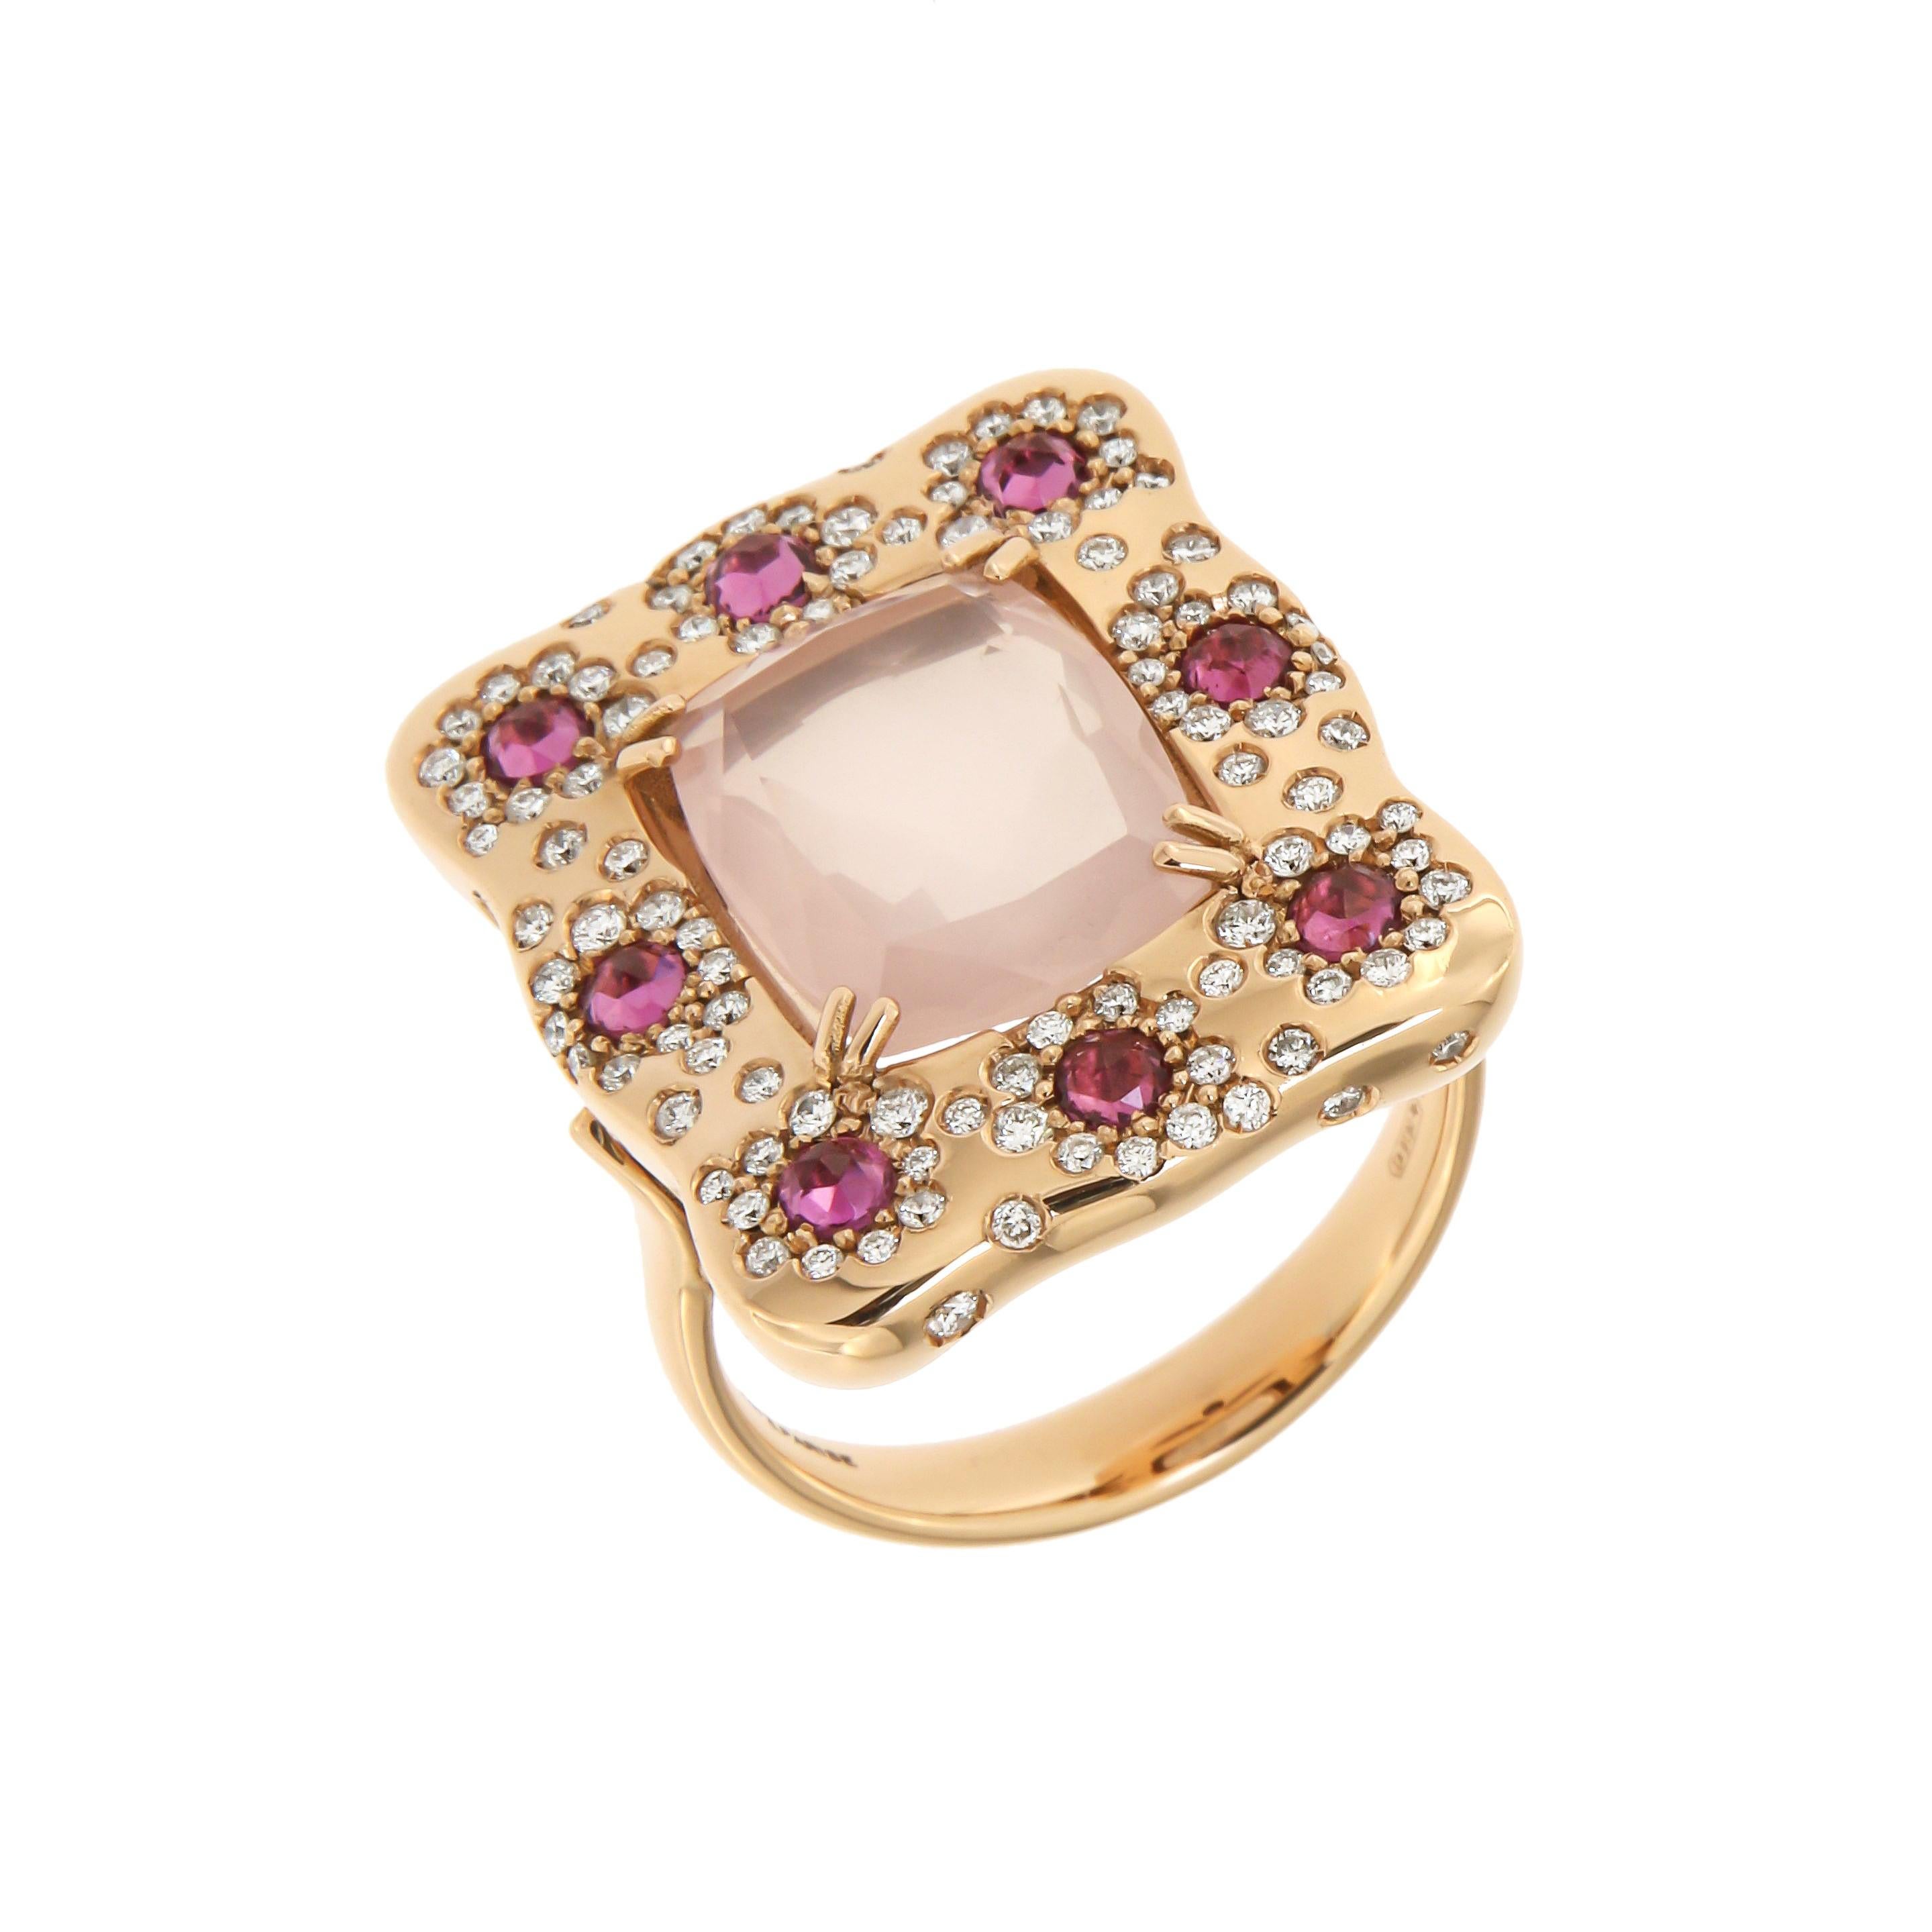 Italian Designer 18k Quartz Rhodolite Diamonds Rose Gold Ring for Her